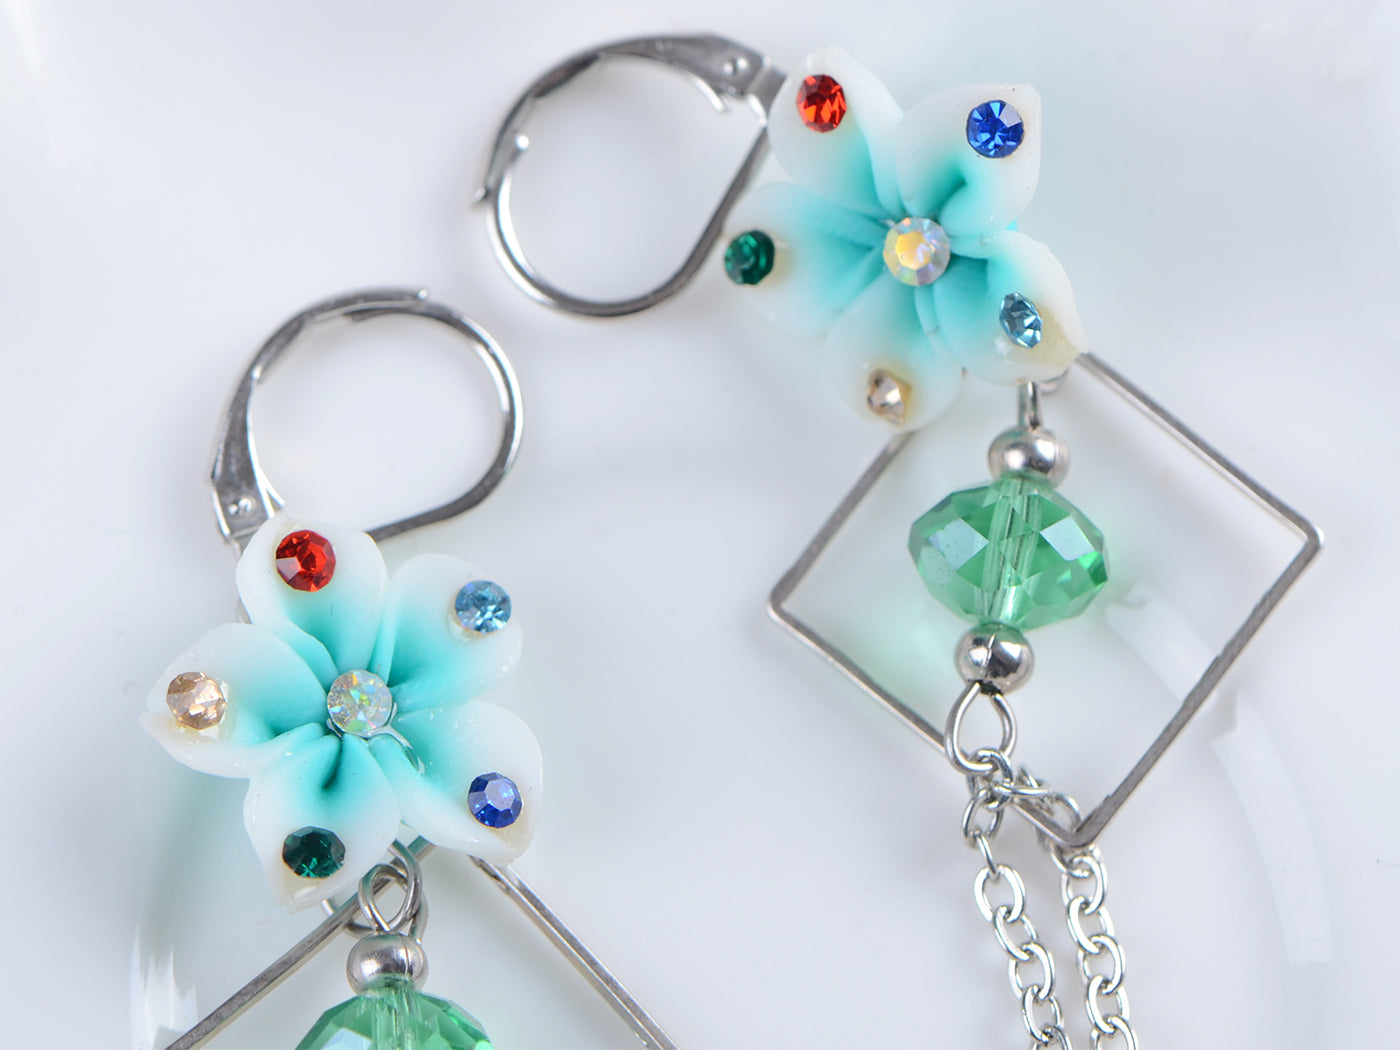 Flower Floral Pendant Geometric Dangling Chains Tassels Chandelier Earrings